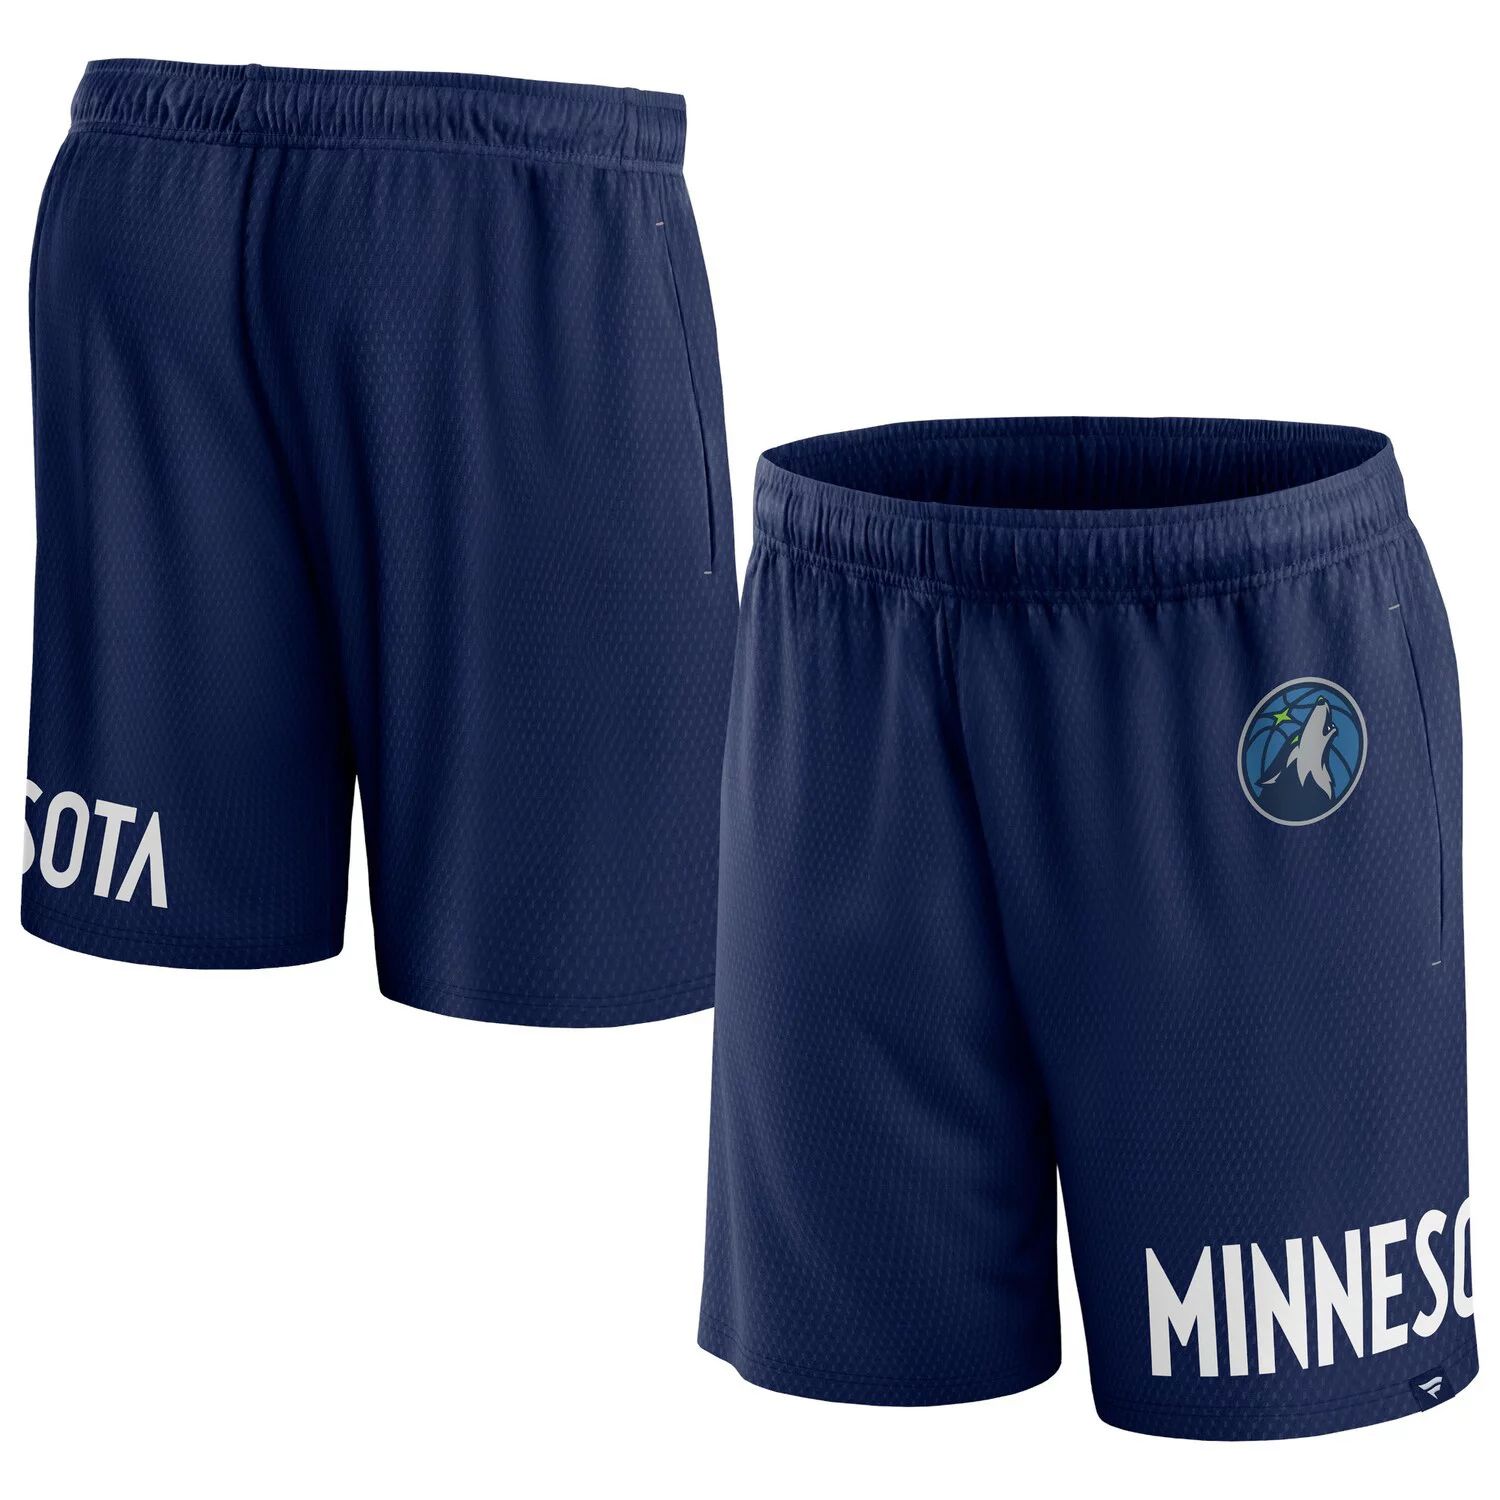 цена Мужские фирменные темно-синие шорты из сетки Minnesota Timberwolves Free Throw Fanatics